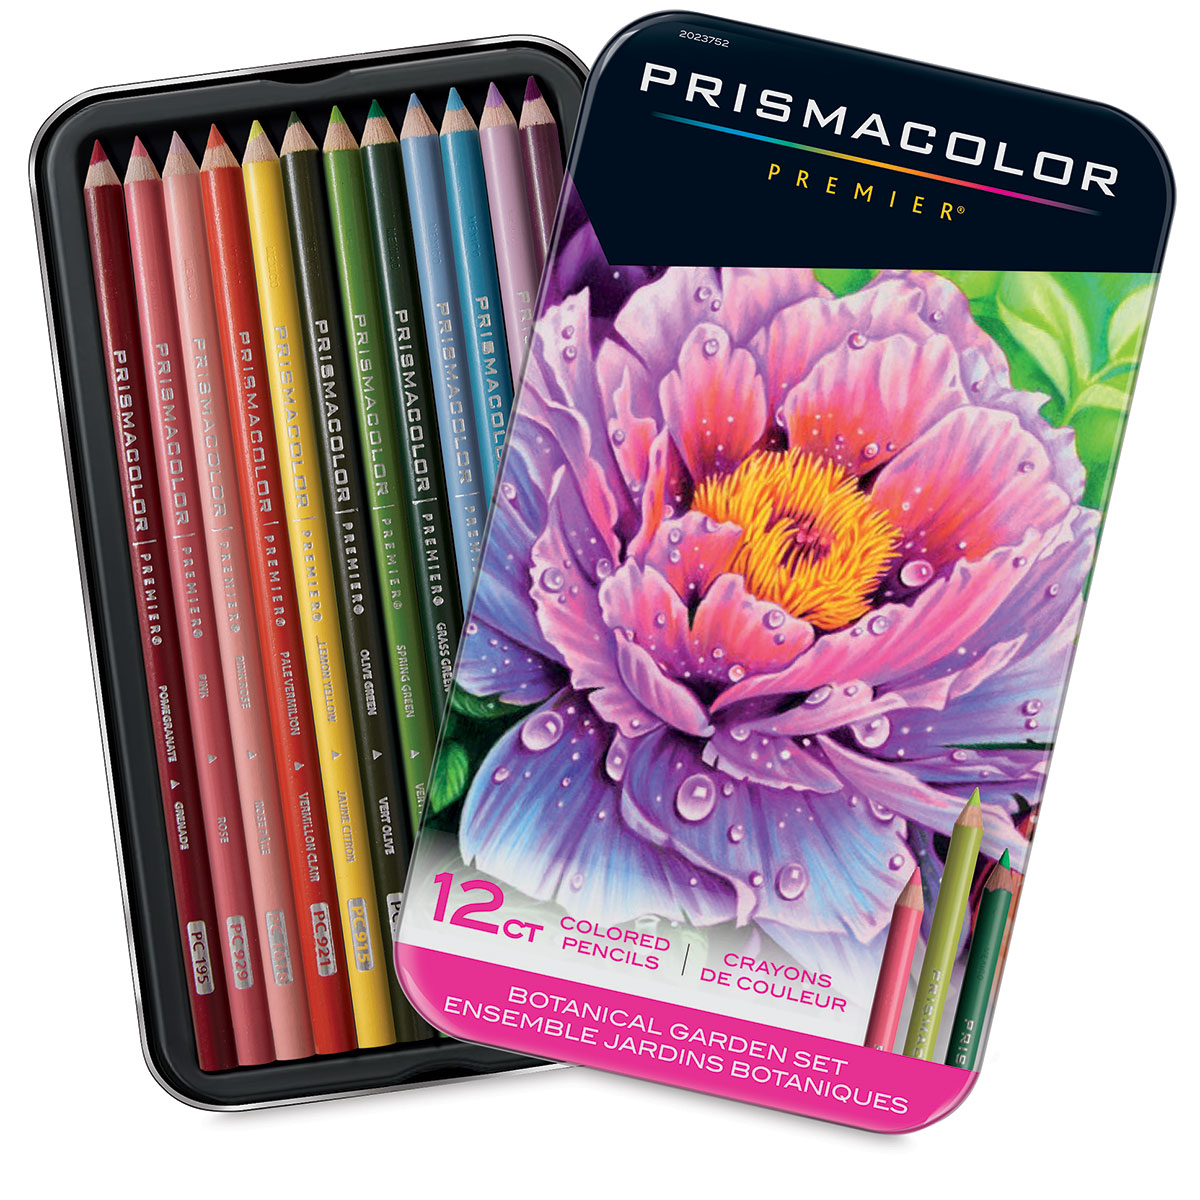 Prismacolor Premier Colored Pencils, Set of 12, Botanical Colors